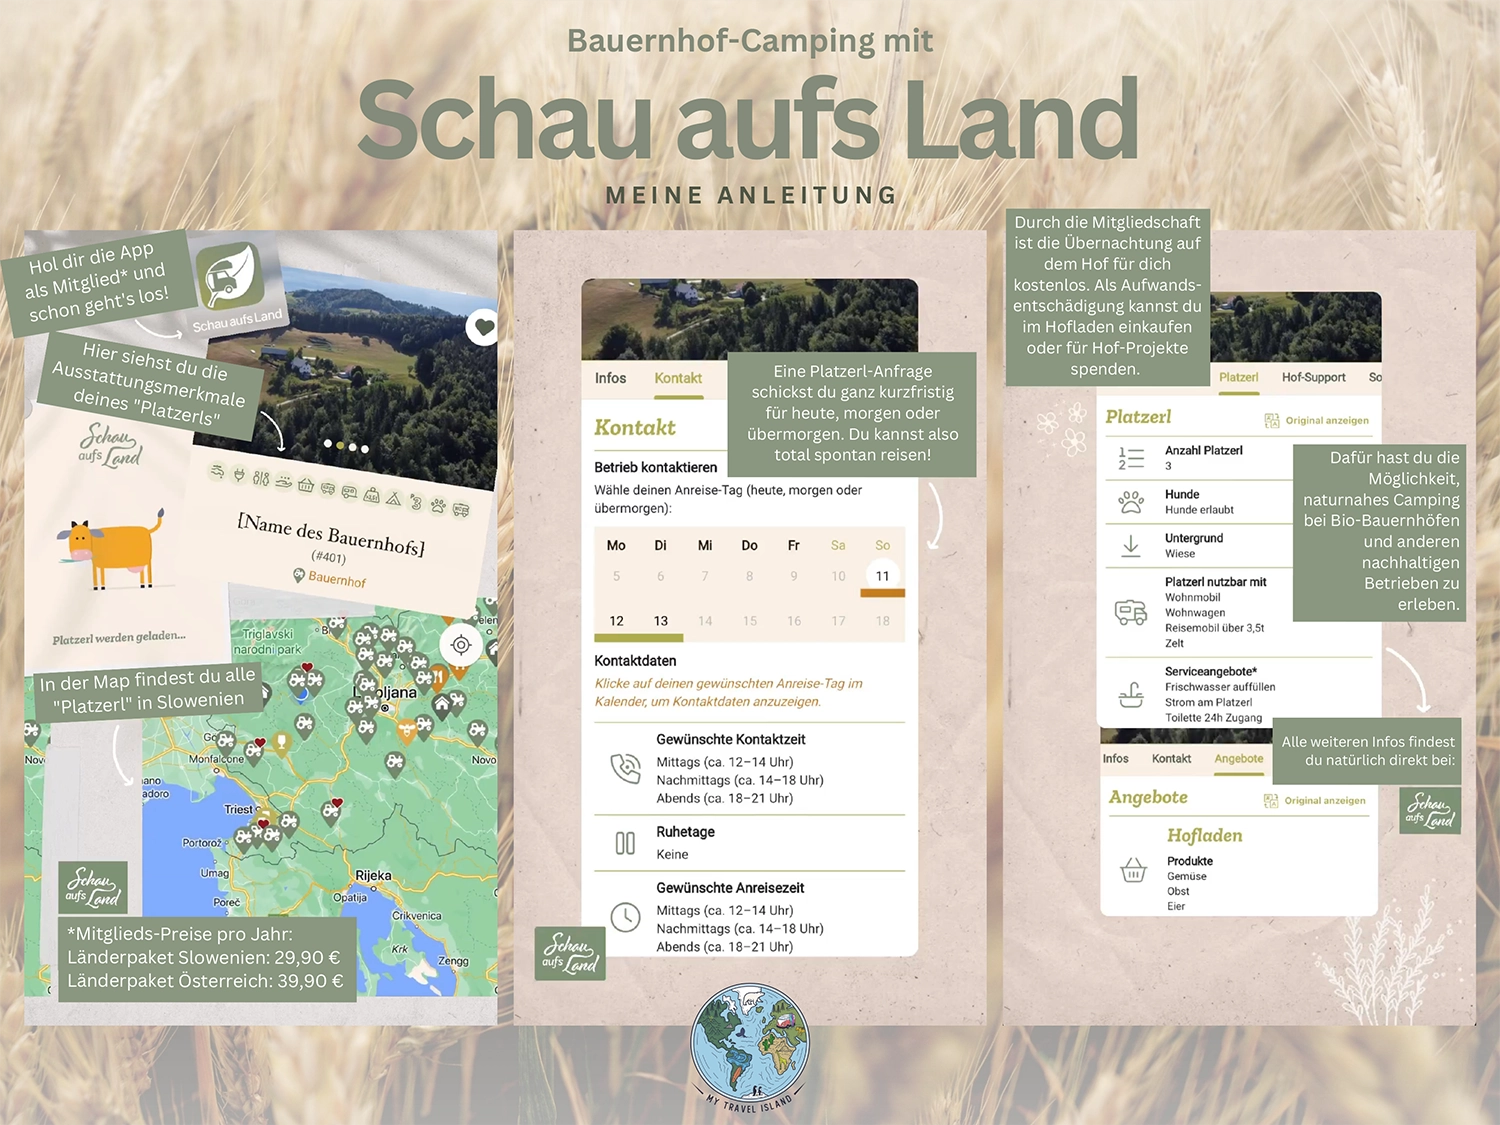 Bauernhof-Camping mit Schau aufs Land im Salzburger Land und im restlichen Österreich.